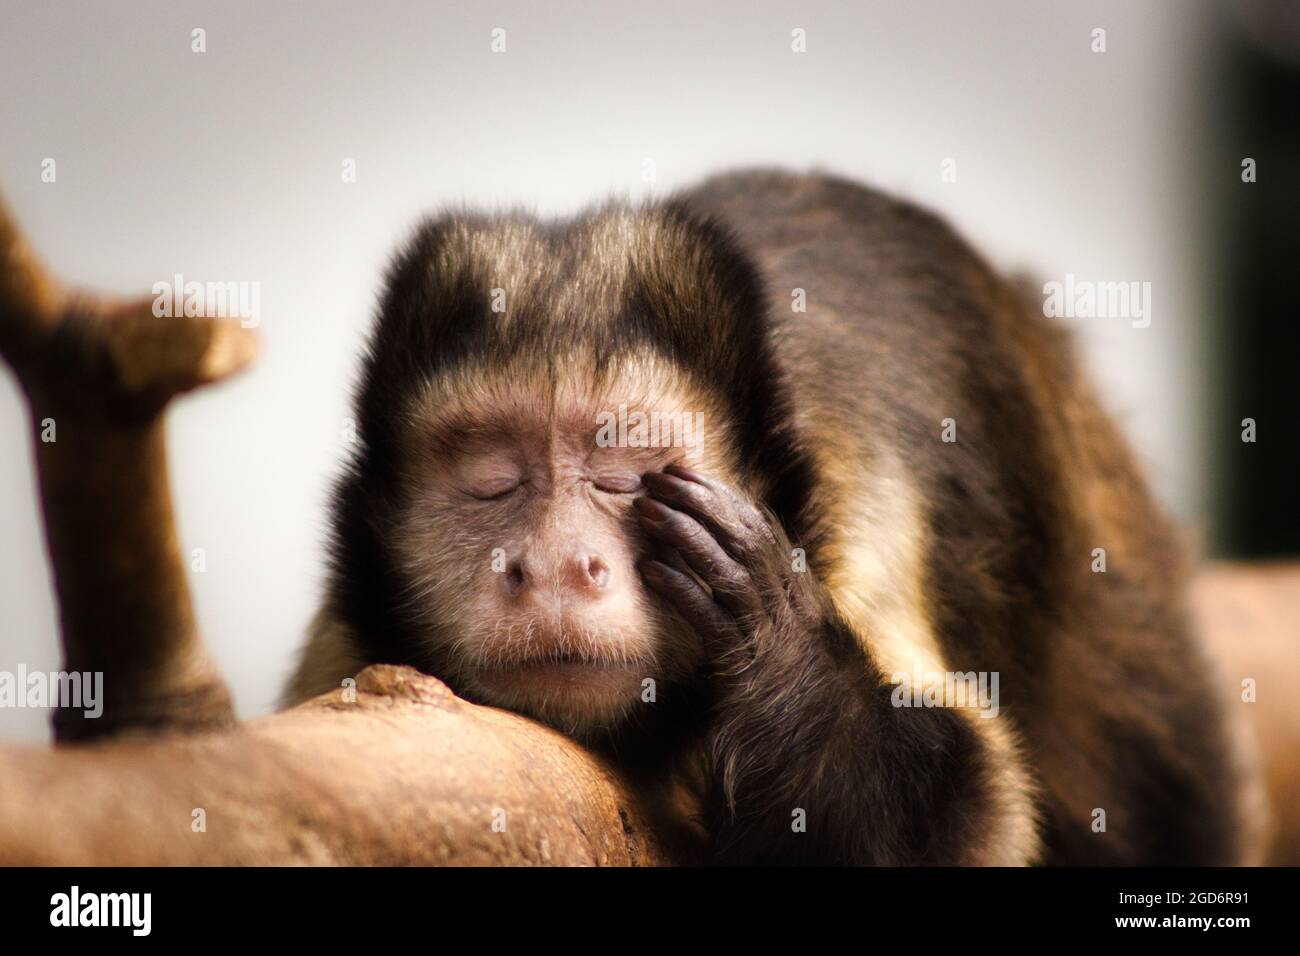 Affe, der müde erscheint / Kapuzinieraffe/ capuchin monkey Stock Photo